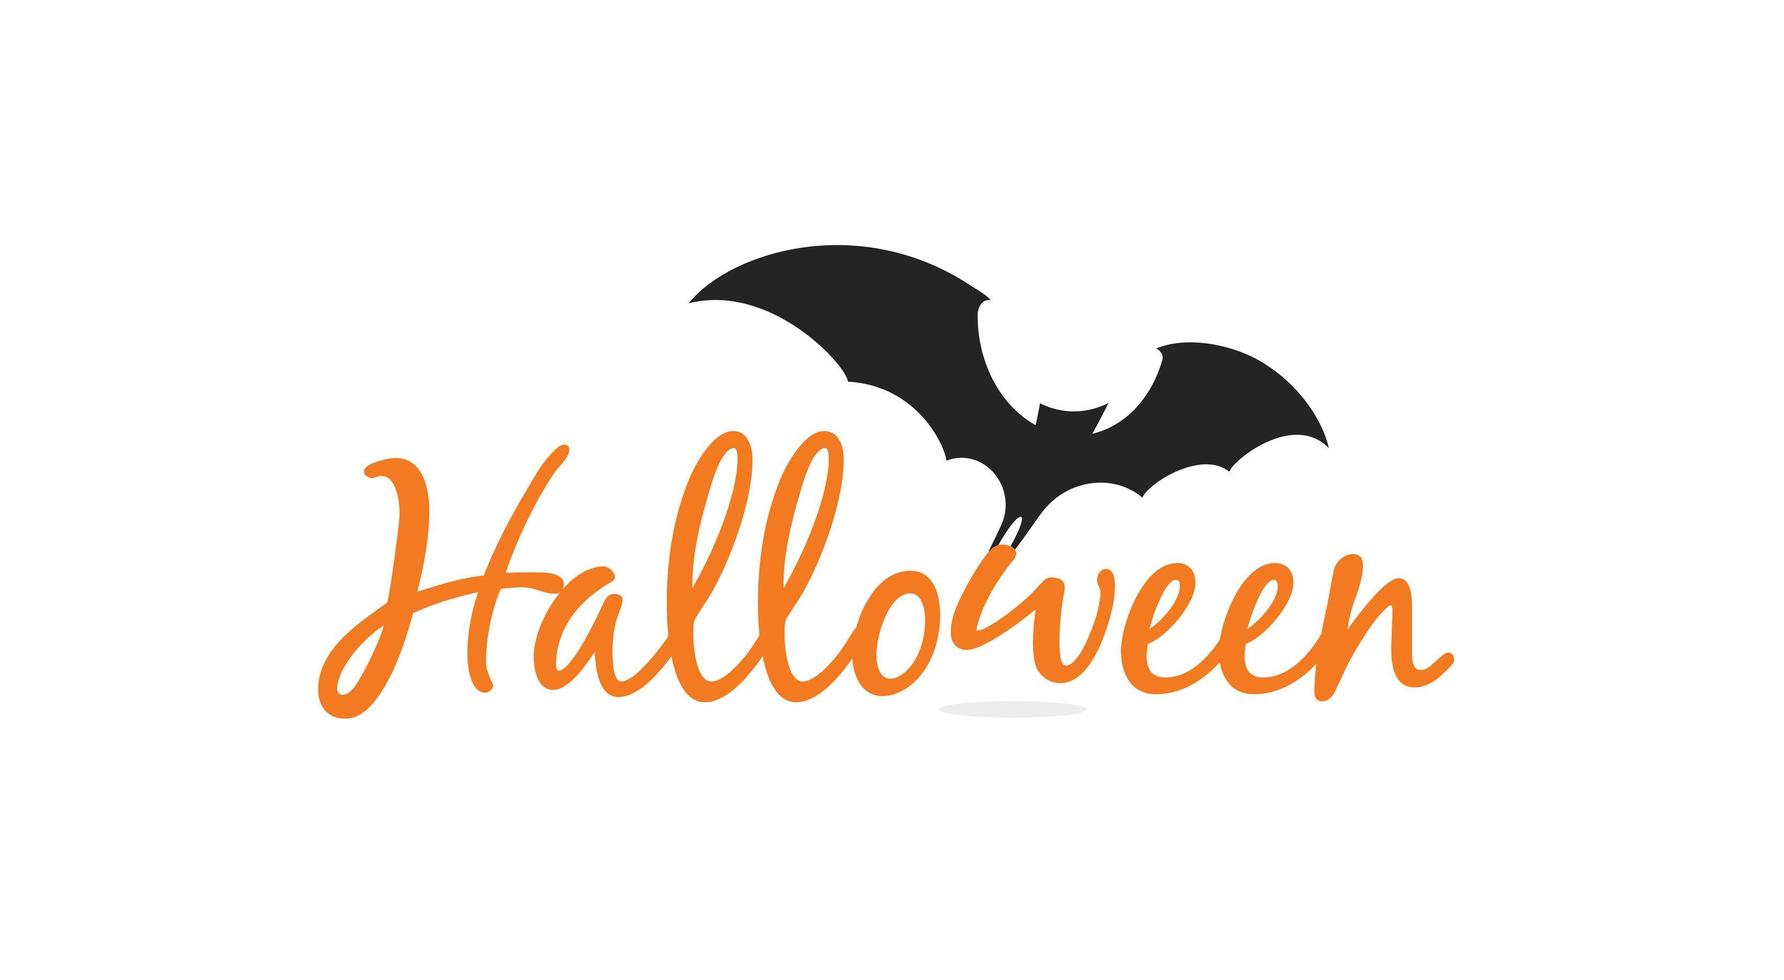 halloween elegante belettering met zwart silhouet van vliegende vleermuis. geïsoleerd ontwerp voor halloween-evenement, promo, logo, banner, monogram en poster. vectorillustratie. vector